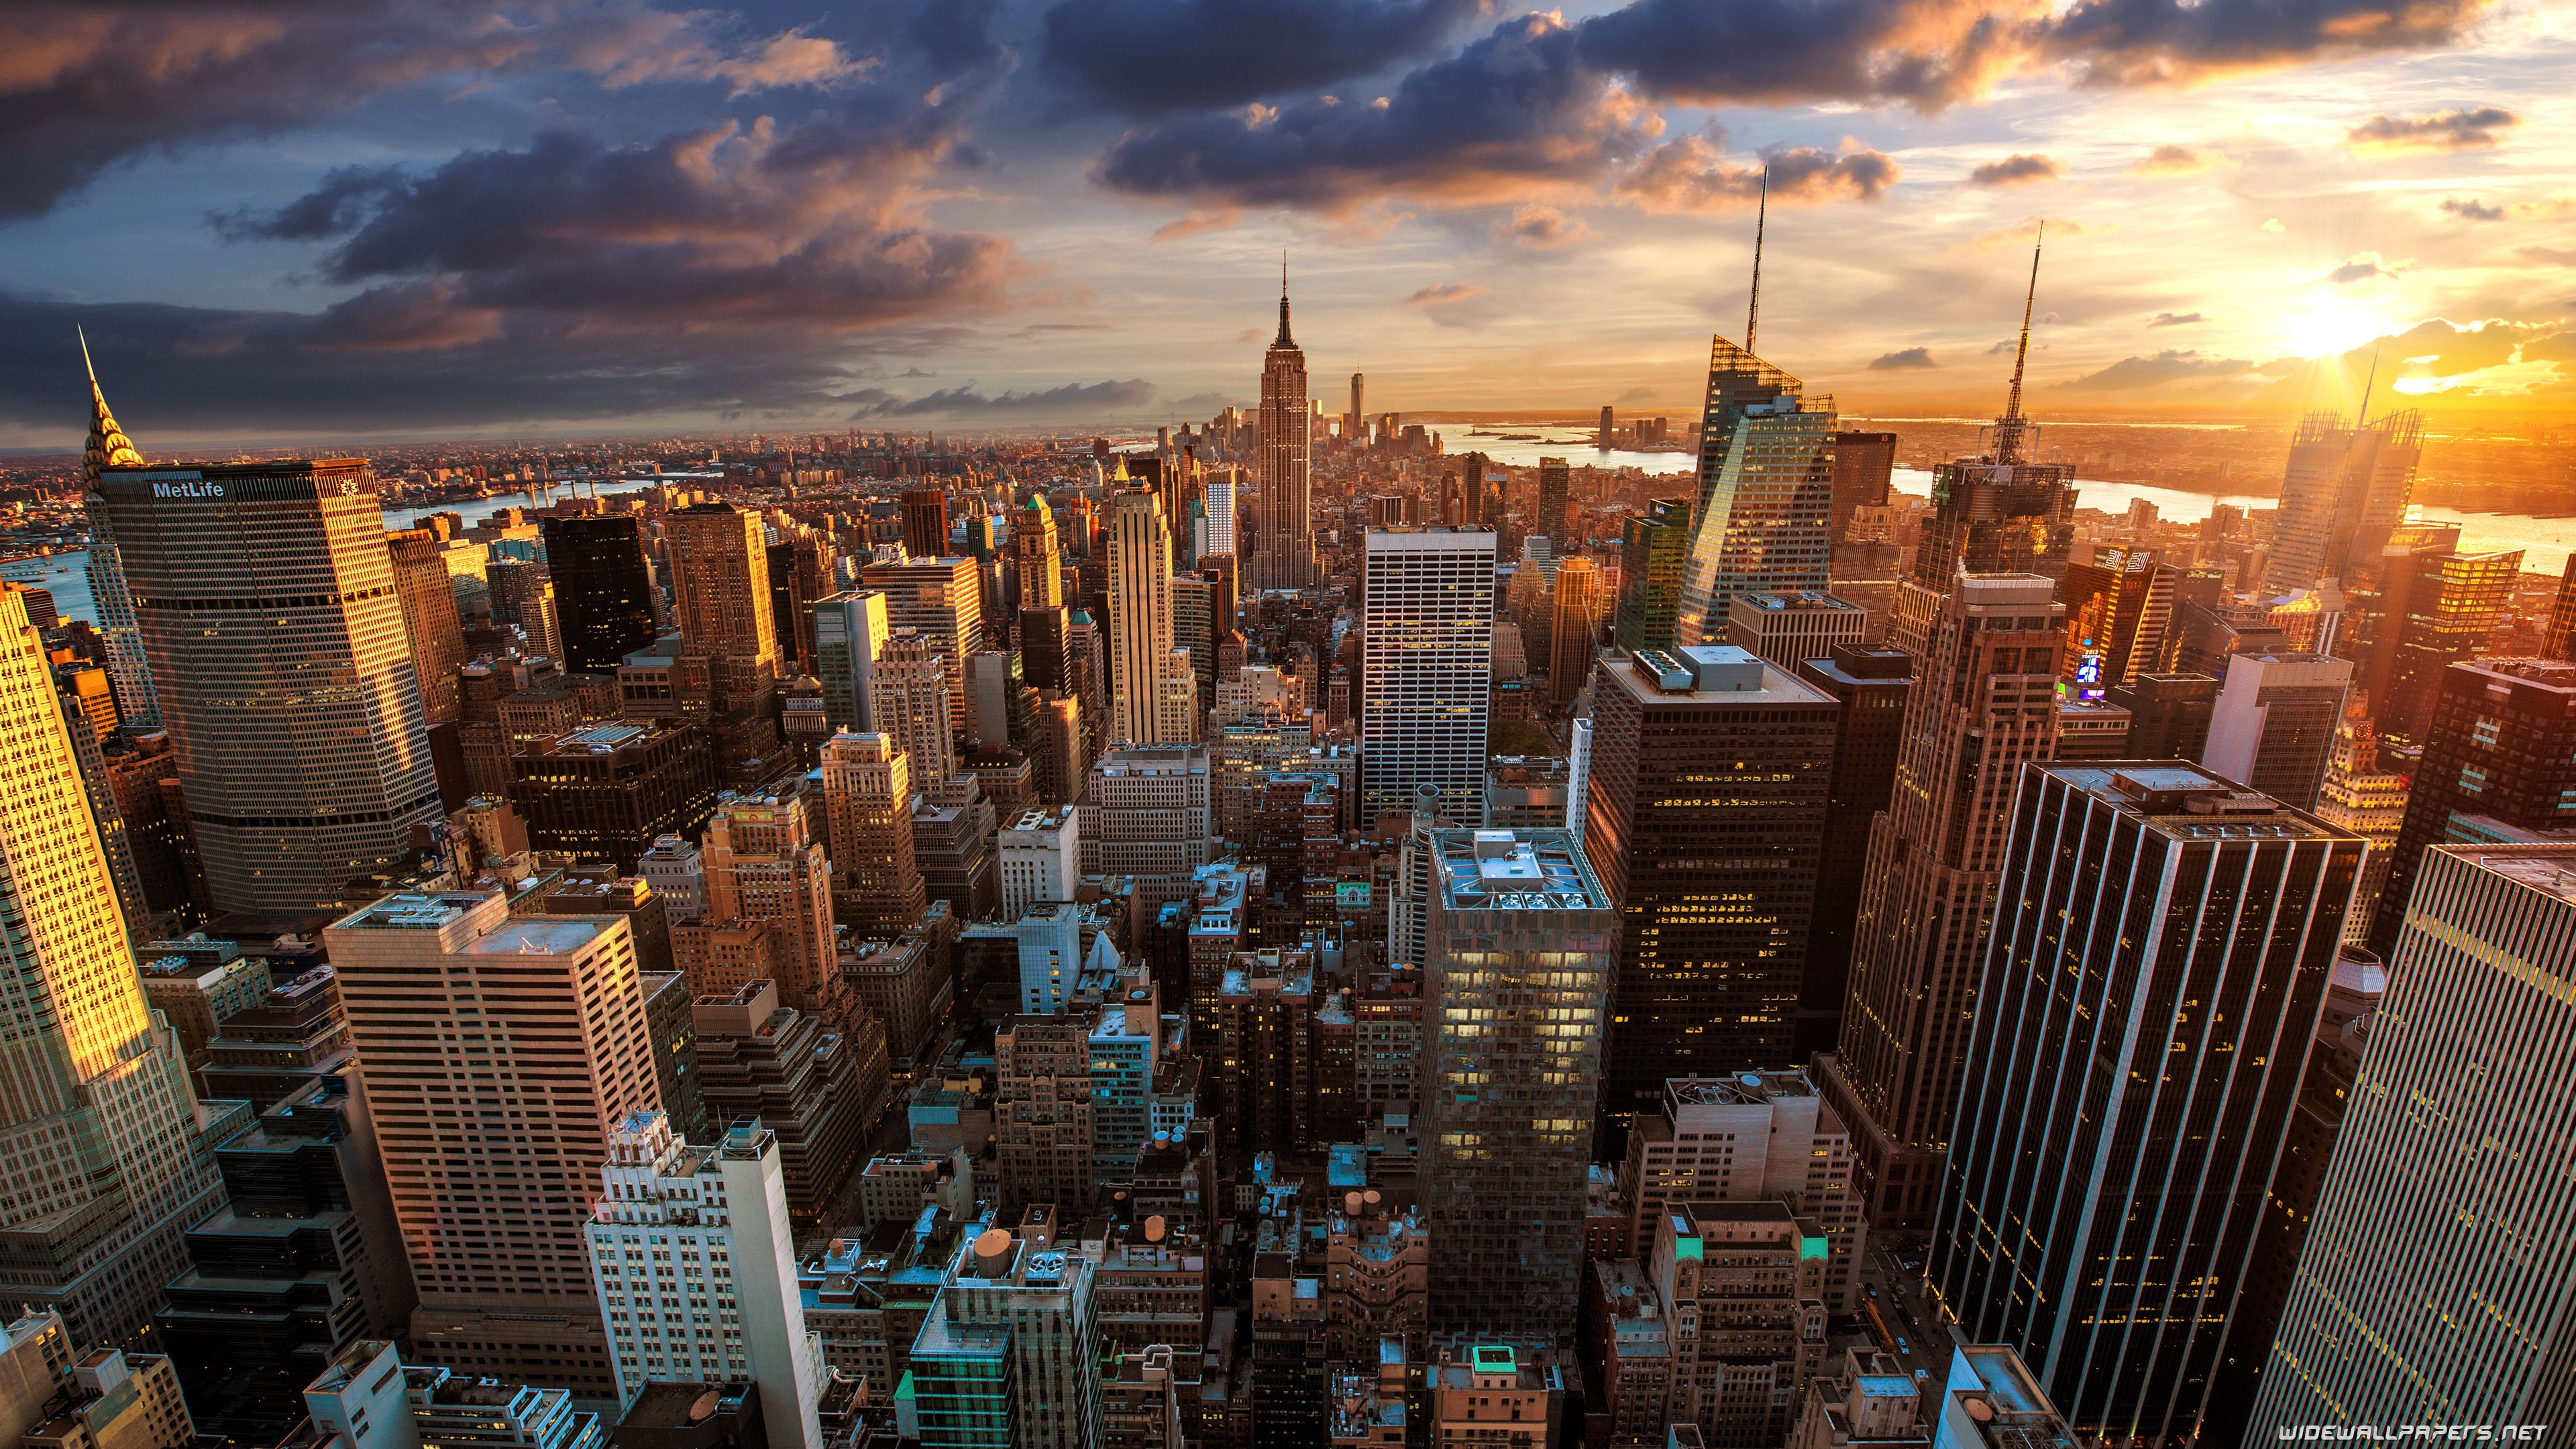 3840x2160 New York City Desktop Wallpapers Top Free New York City Desktop Backgrounds